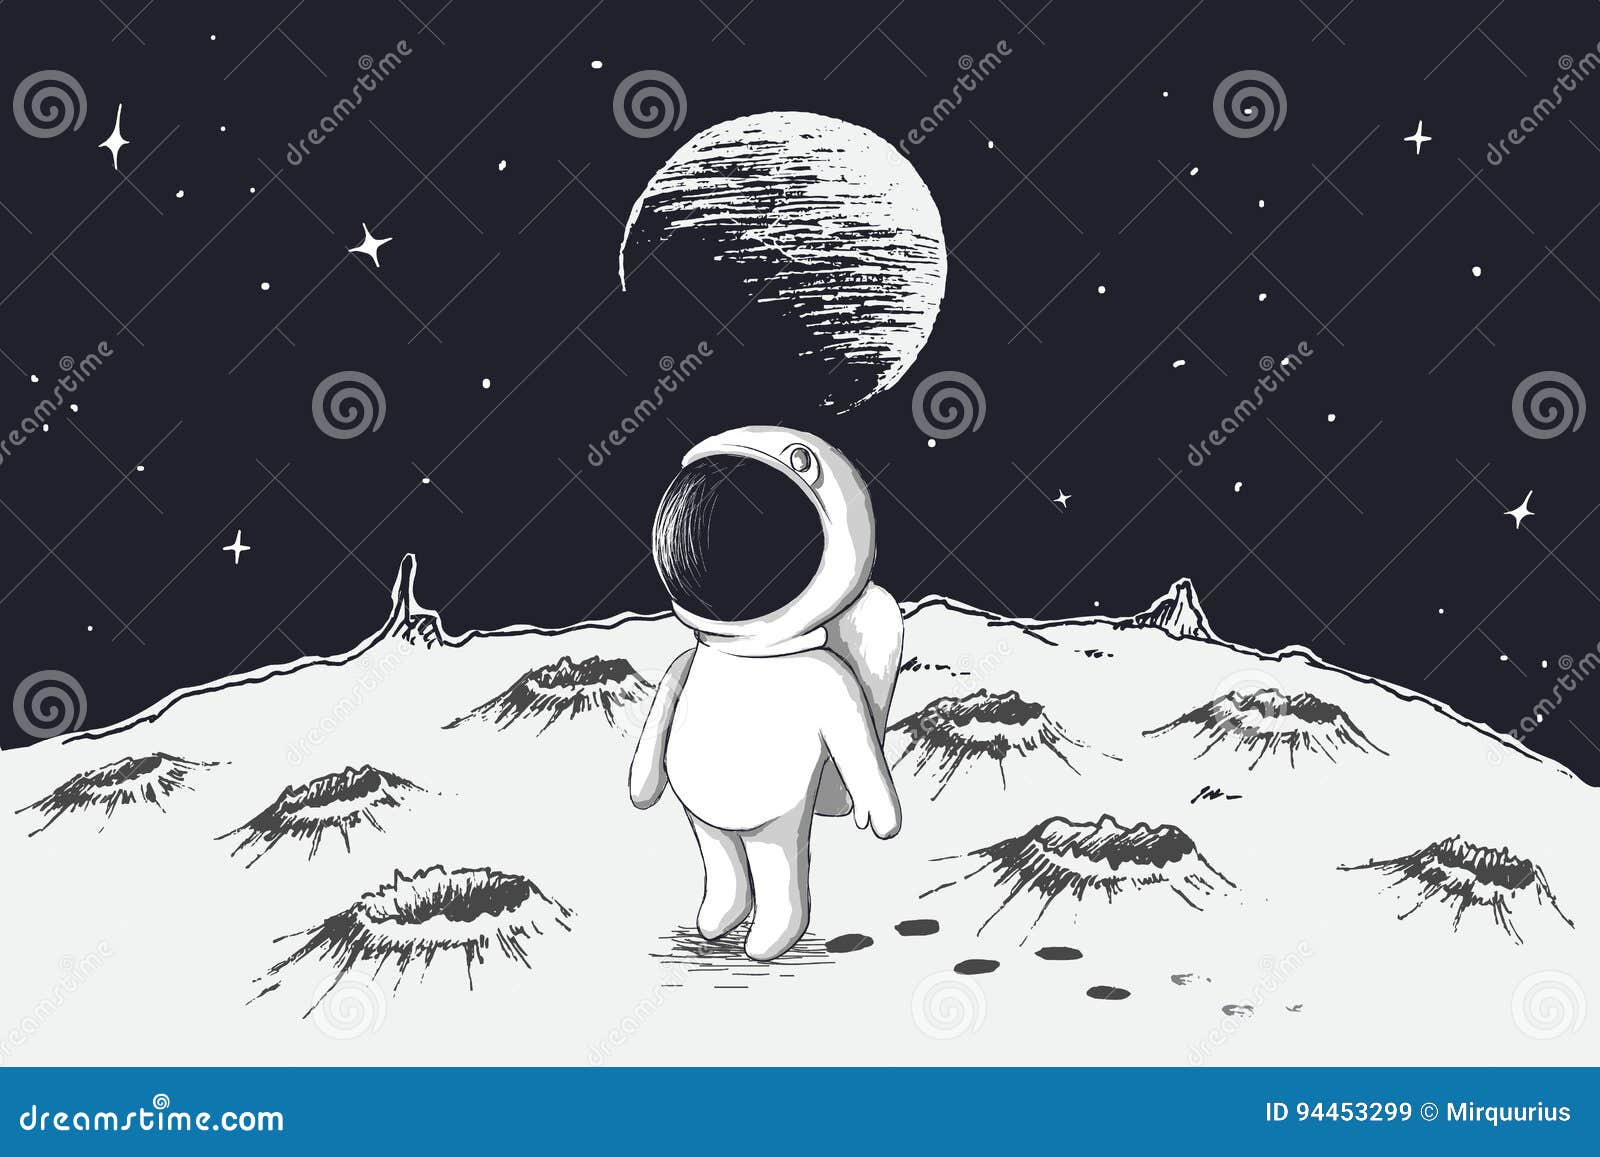 Нарисовать дом на луне окружающий мир 1. Космос рисунок карандашом. Человечек на Луне. Луна рисунок. Космонавт на Луне рисунок.